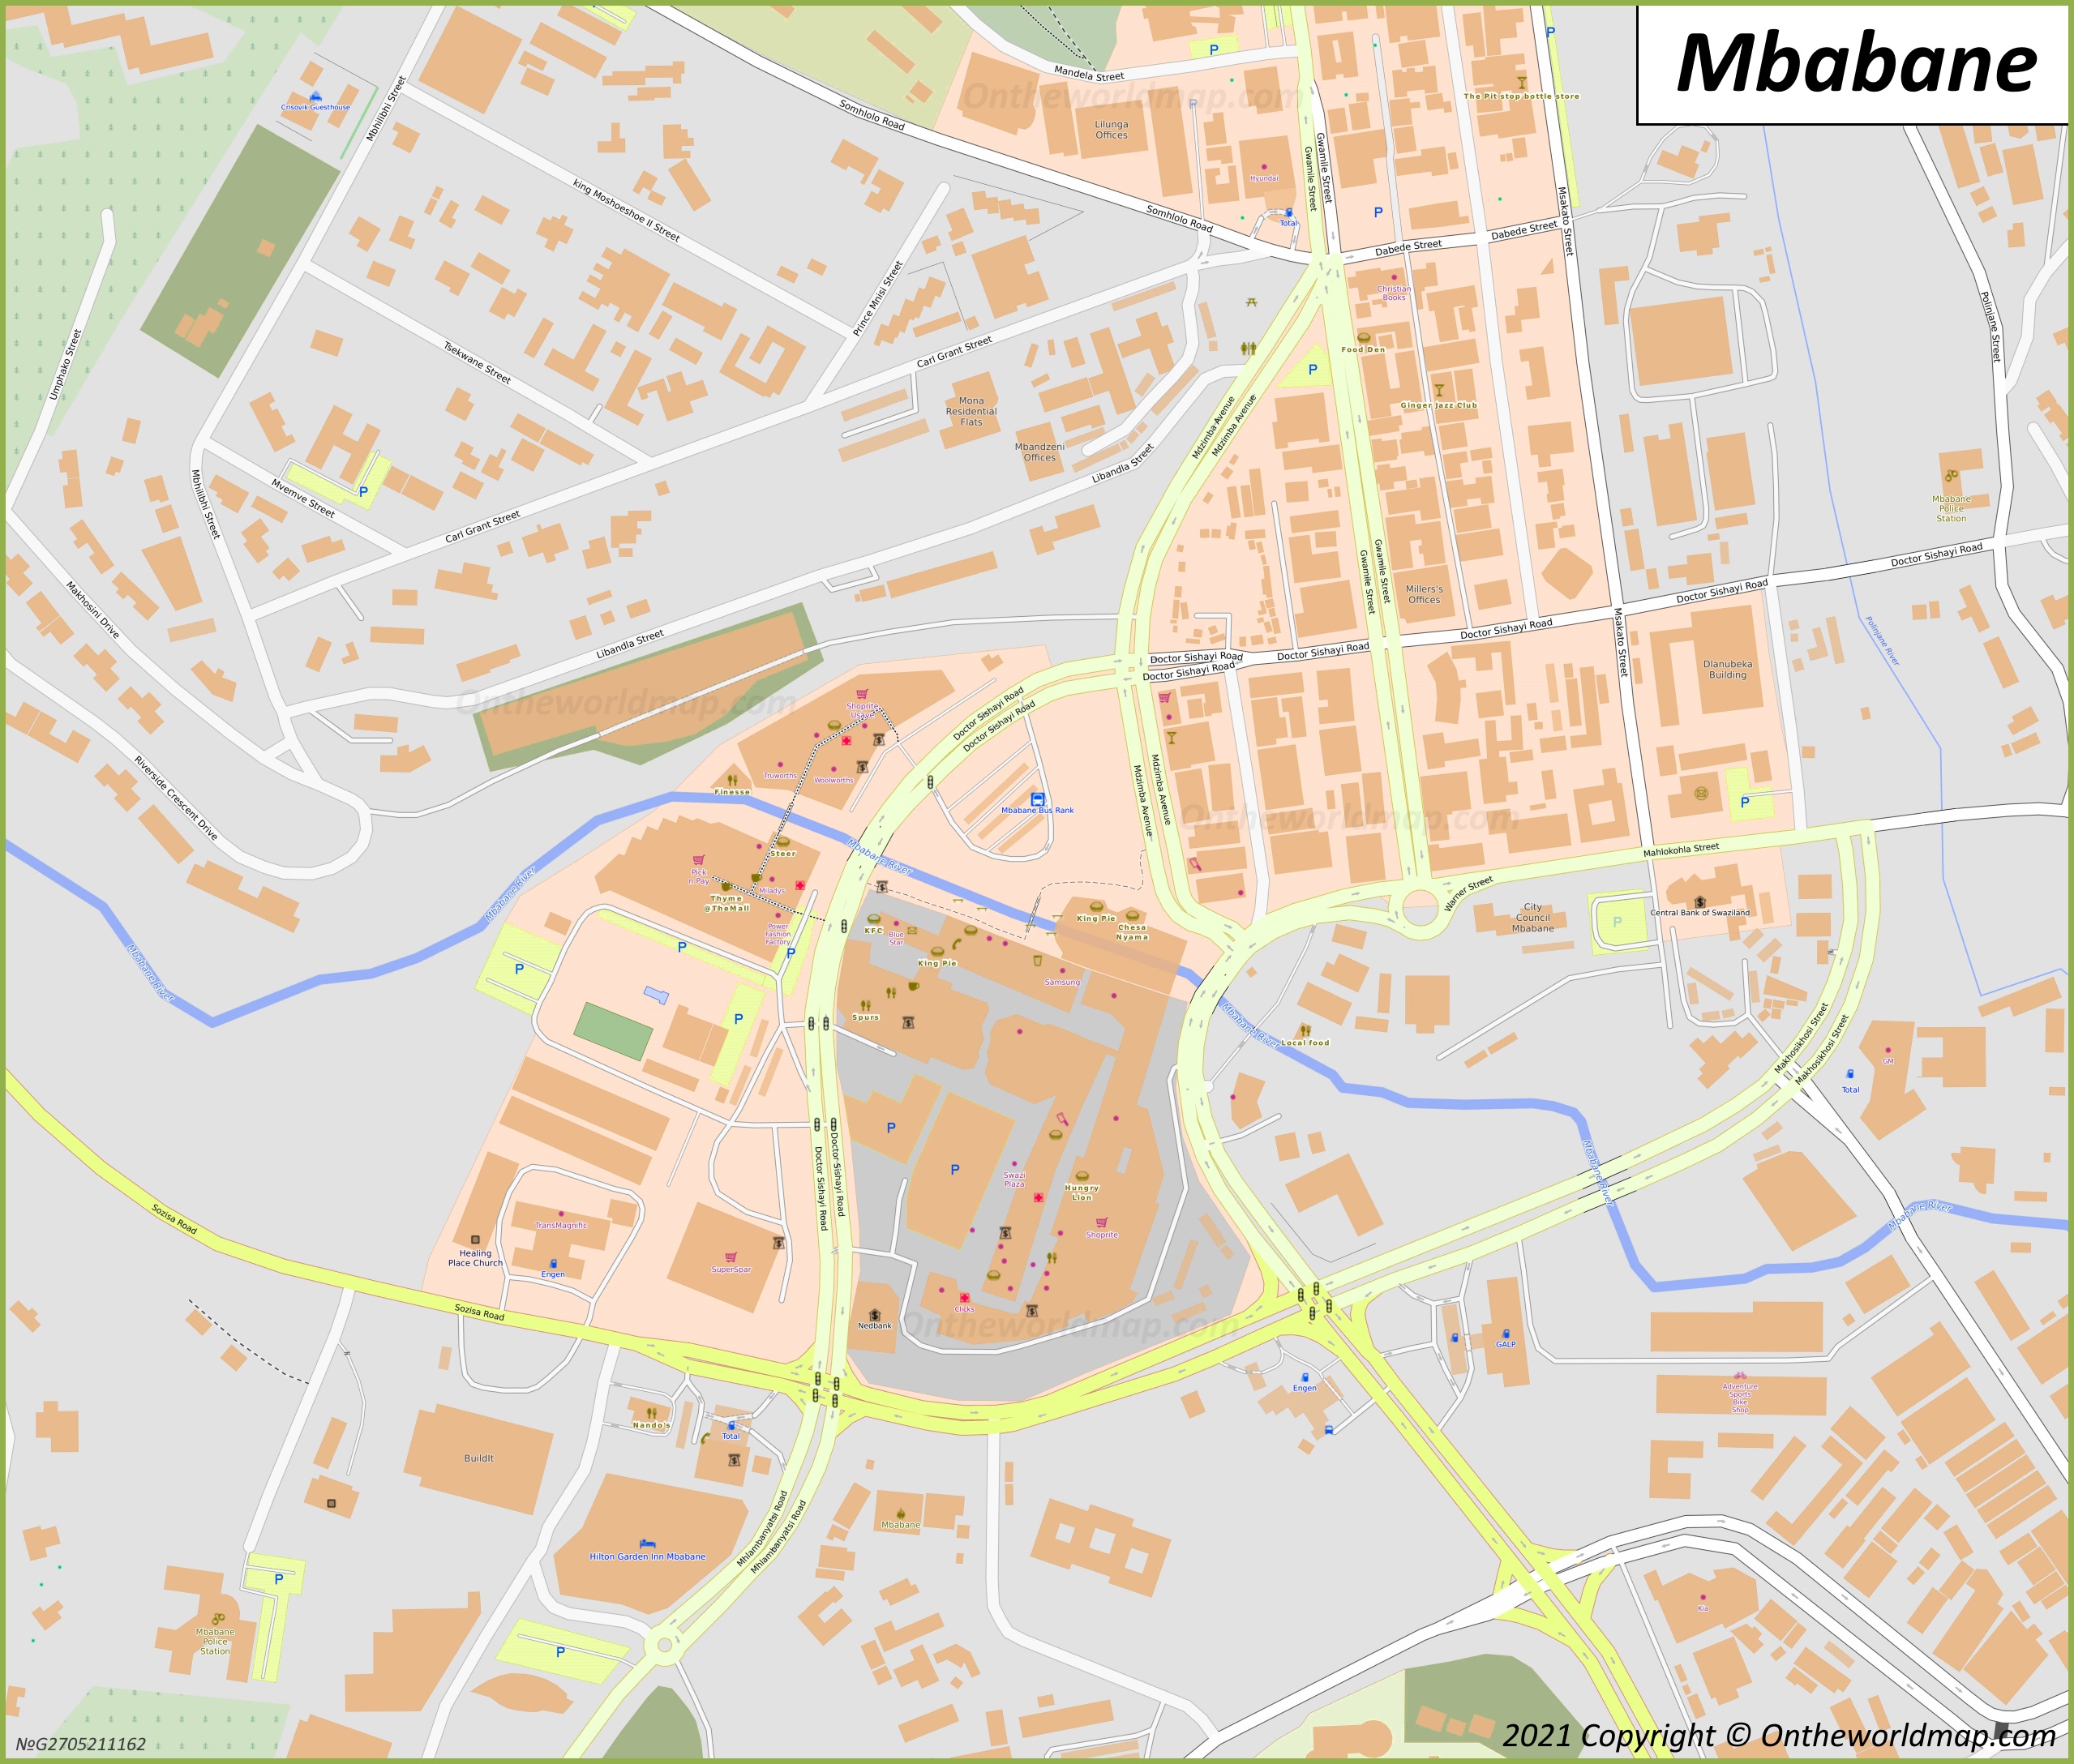 Mbabane City Center Map